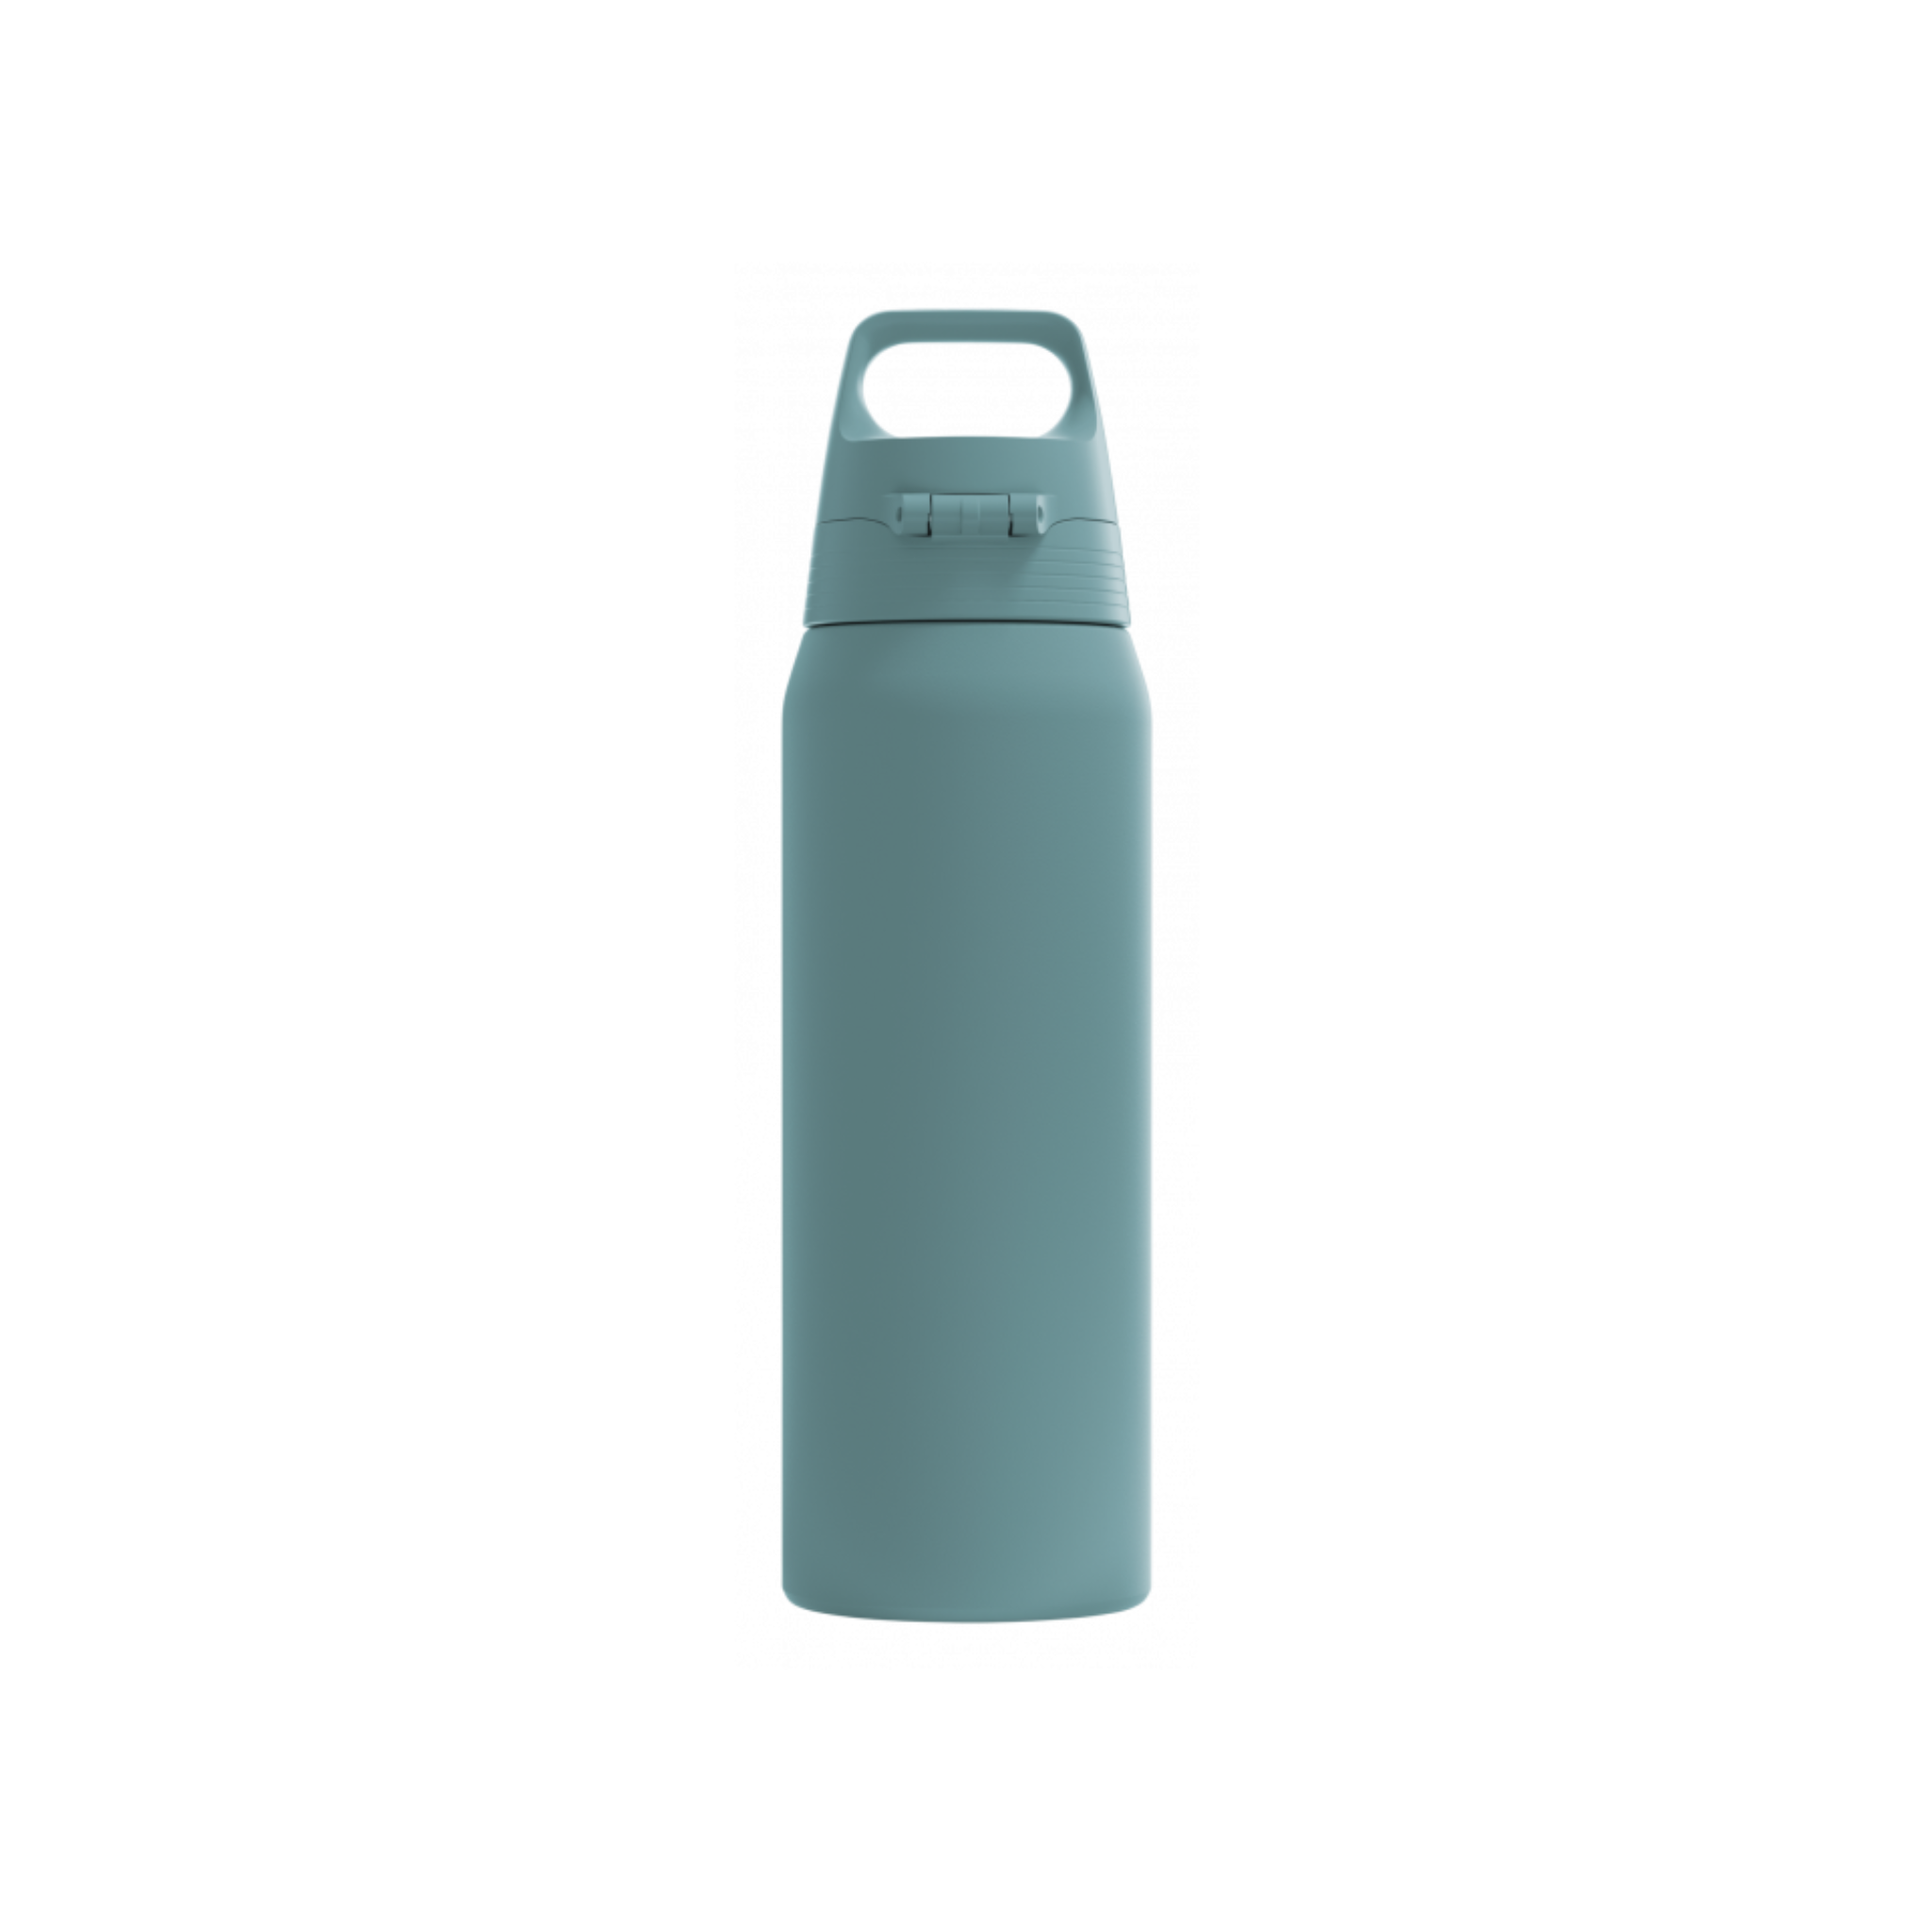 Thermosflasche mit Becher 1,1 l Edelstahl - SIGG Flasche